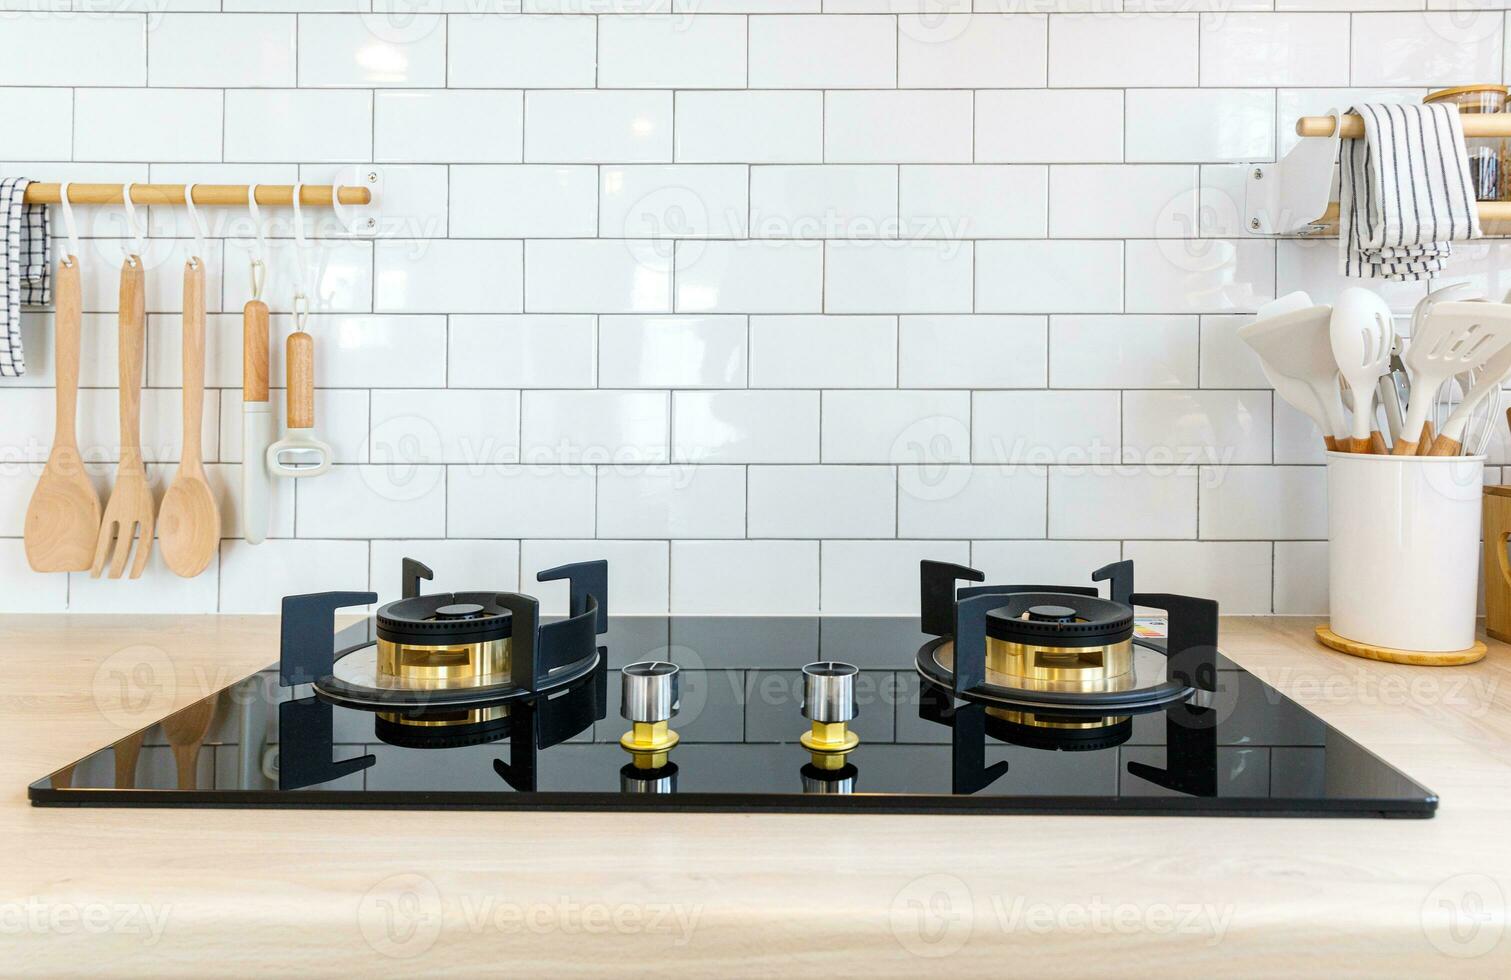 minimalistisch modern keuken in pastel kleuren met keukengerei en ruimte foto